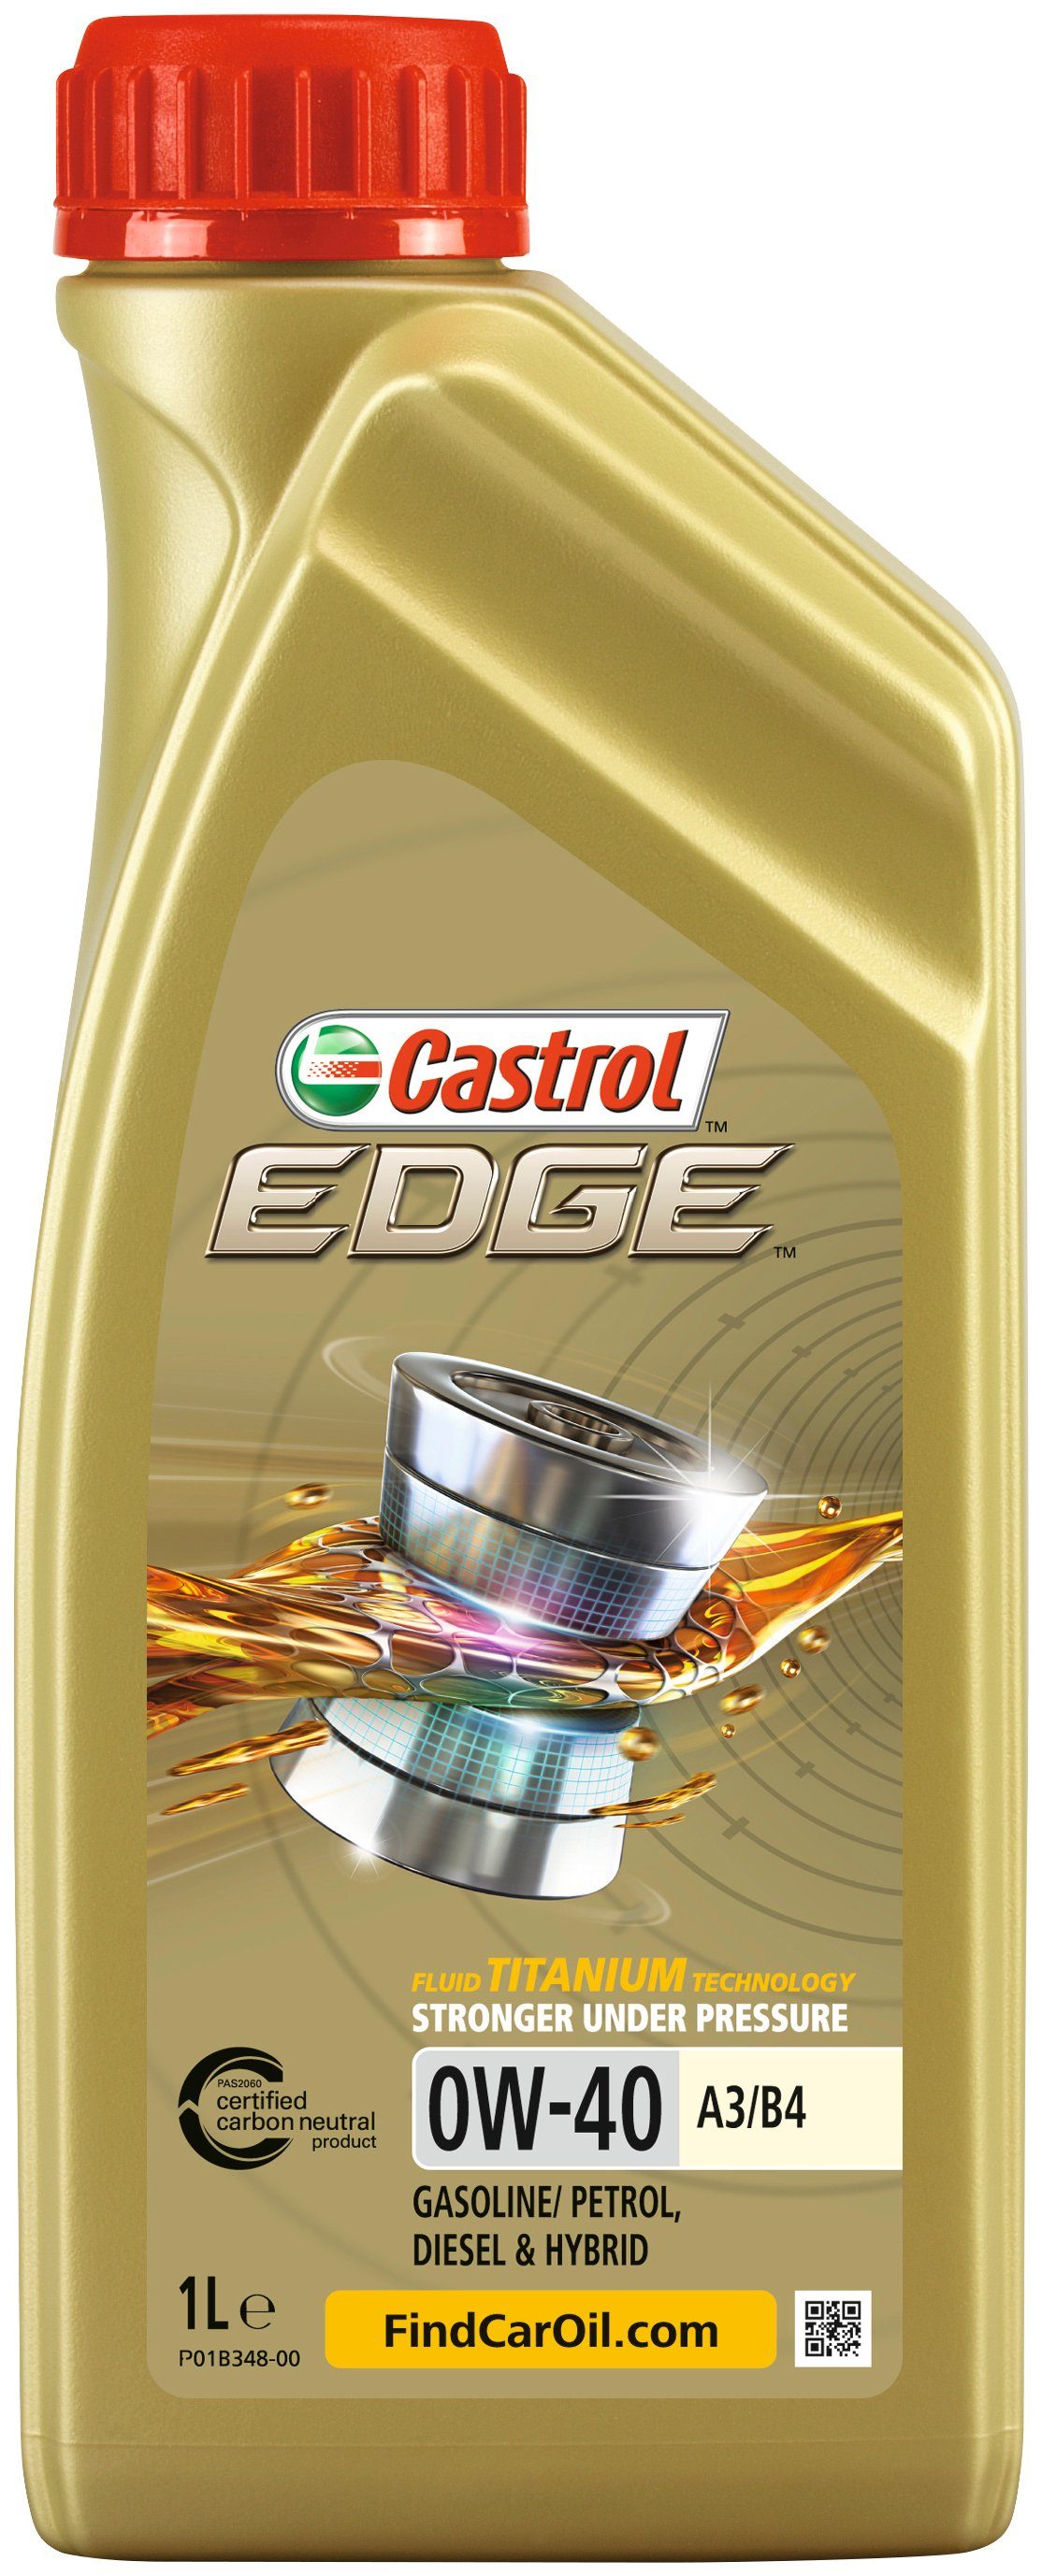 1 EDGE Castrol Liter, A3/B4, 0W-40 für PKW Motoröl